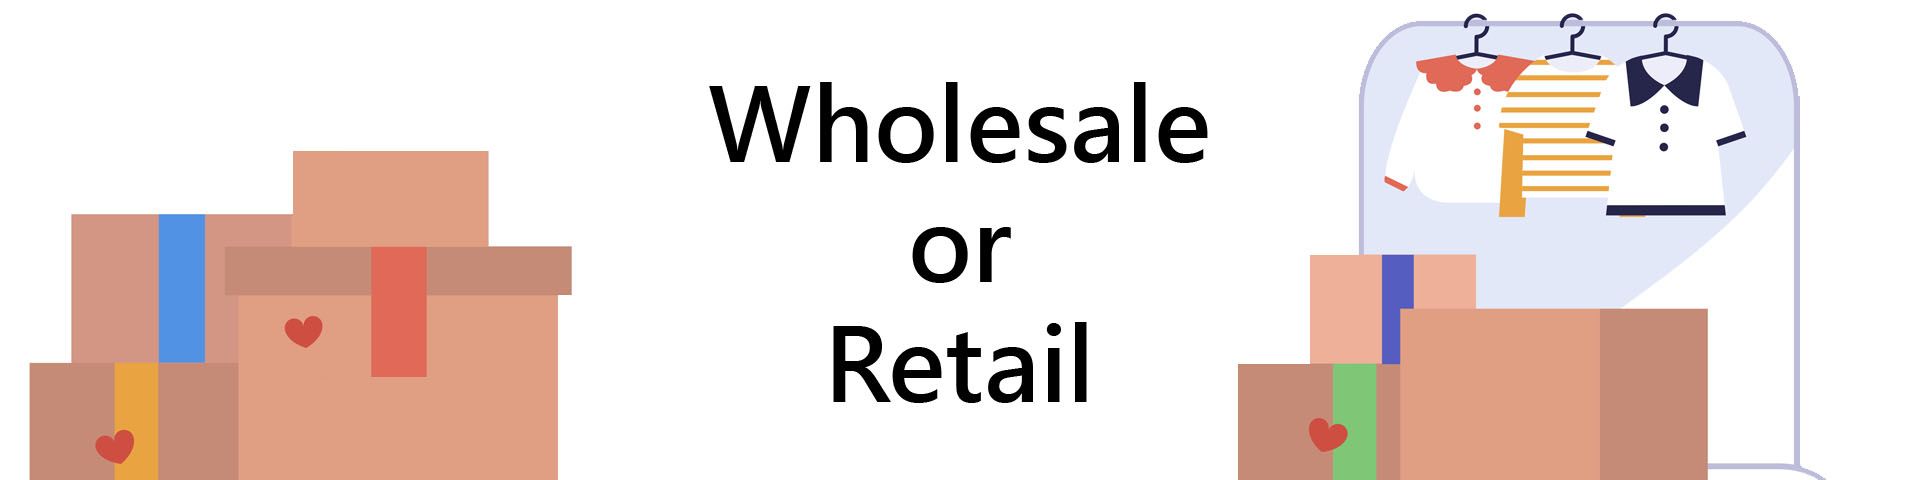 retail vs wholesale | oneclick online service